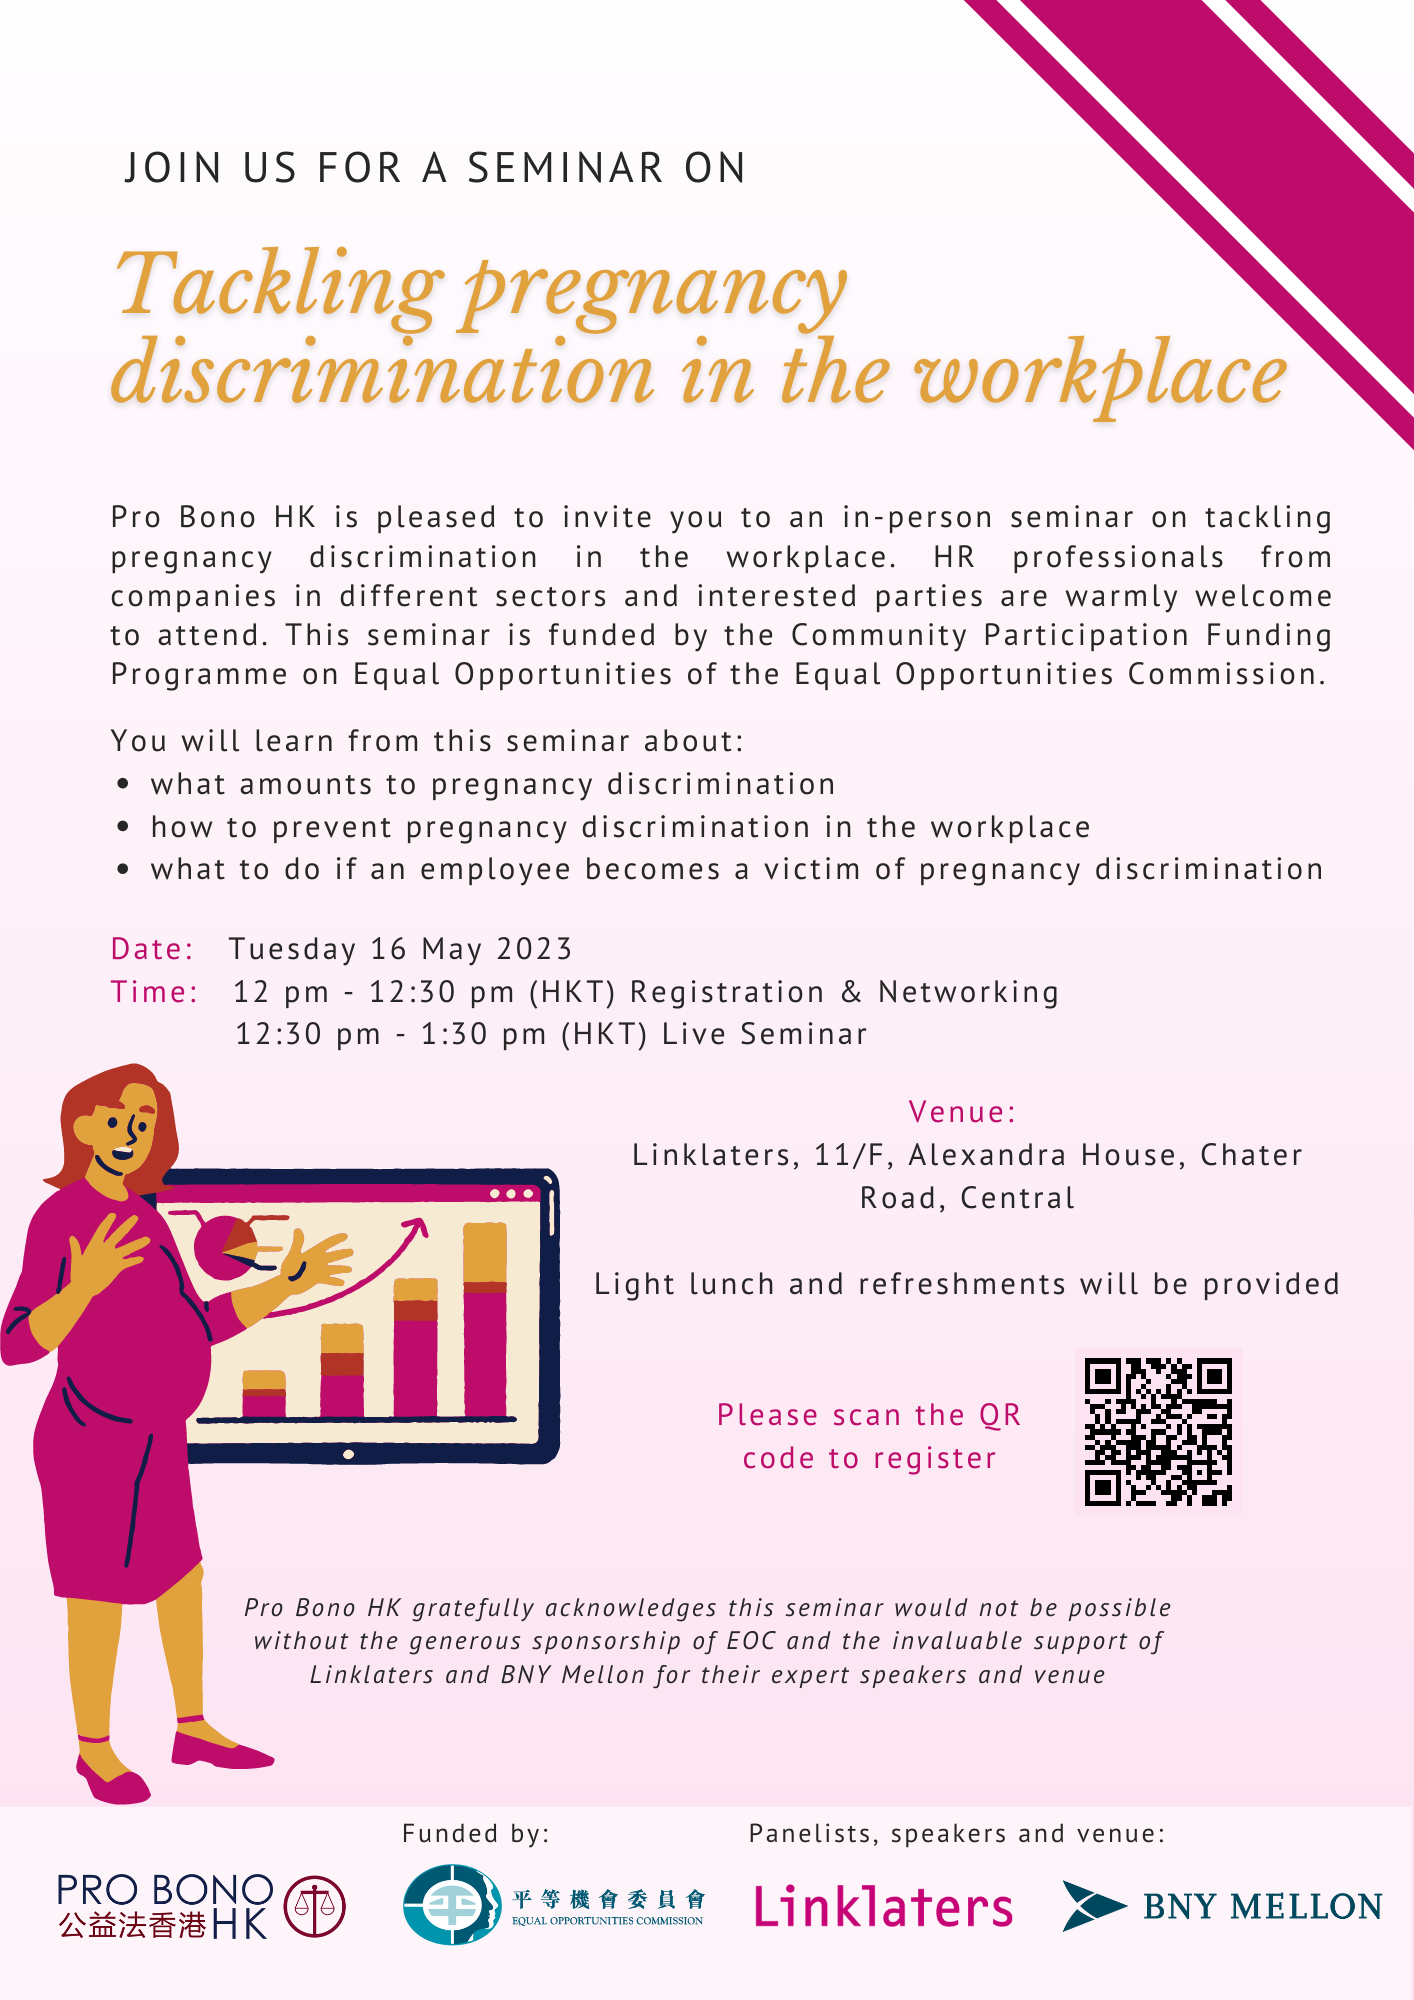 公益法香港舉辦研討會 探討如何消除工作間懷孕歧視